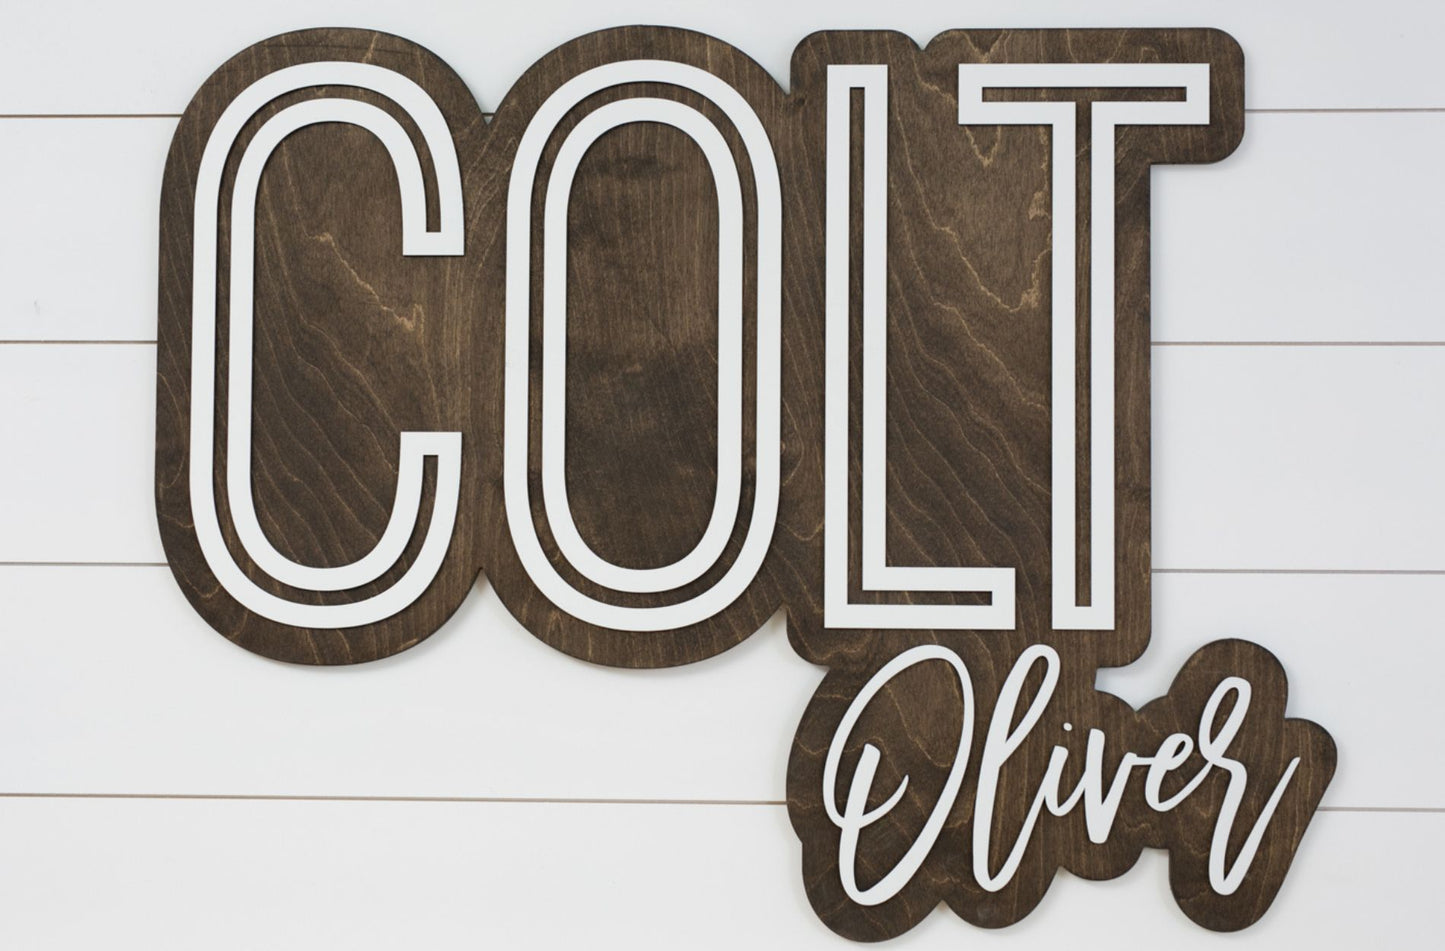 The Colt Bubble Wood Sign